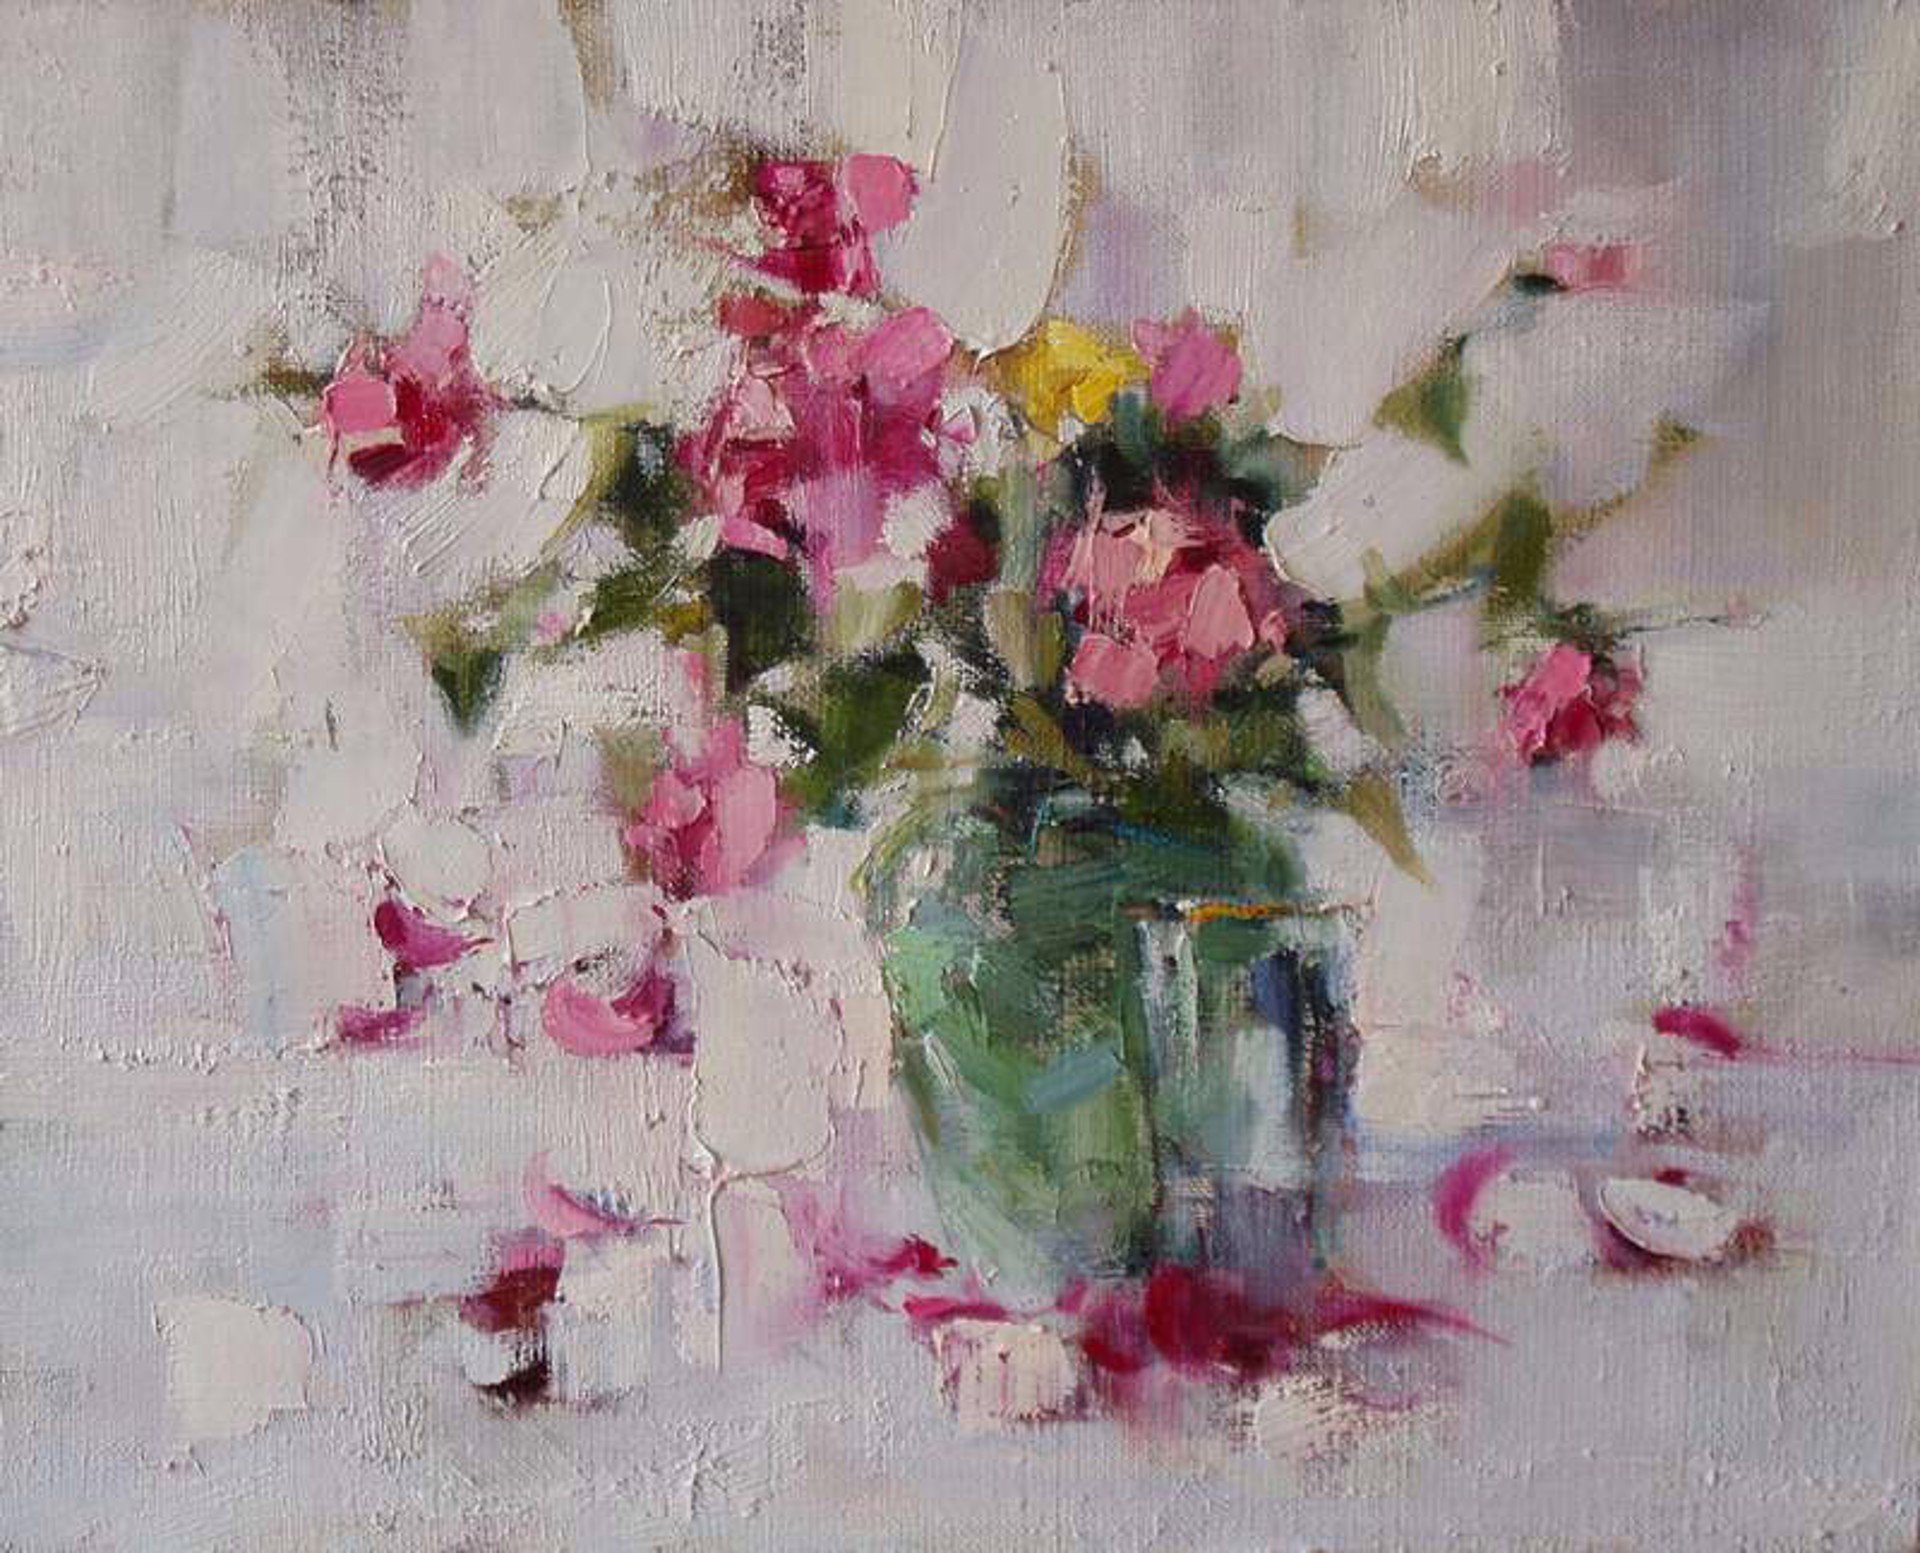 Flowers in a Green Vase by Yana Golubyatnikova